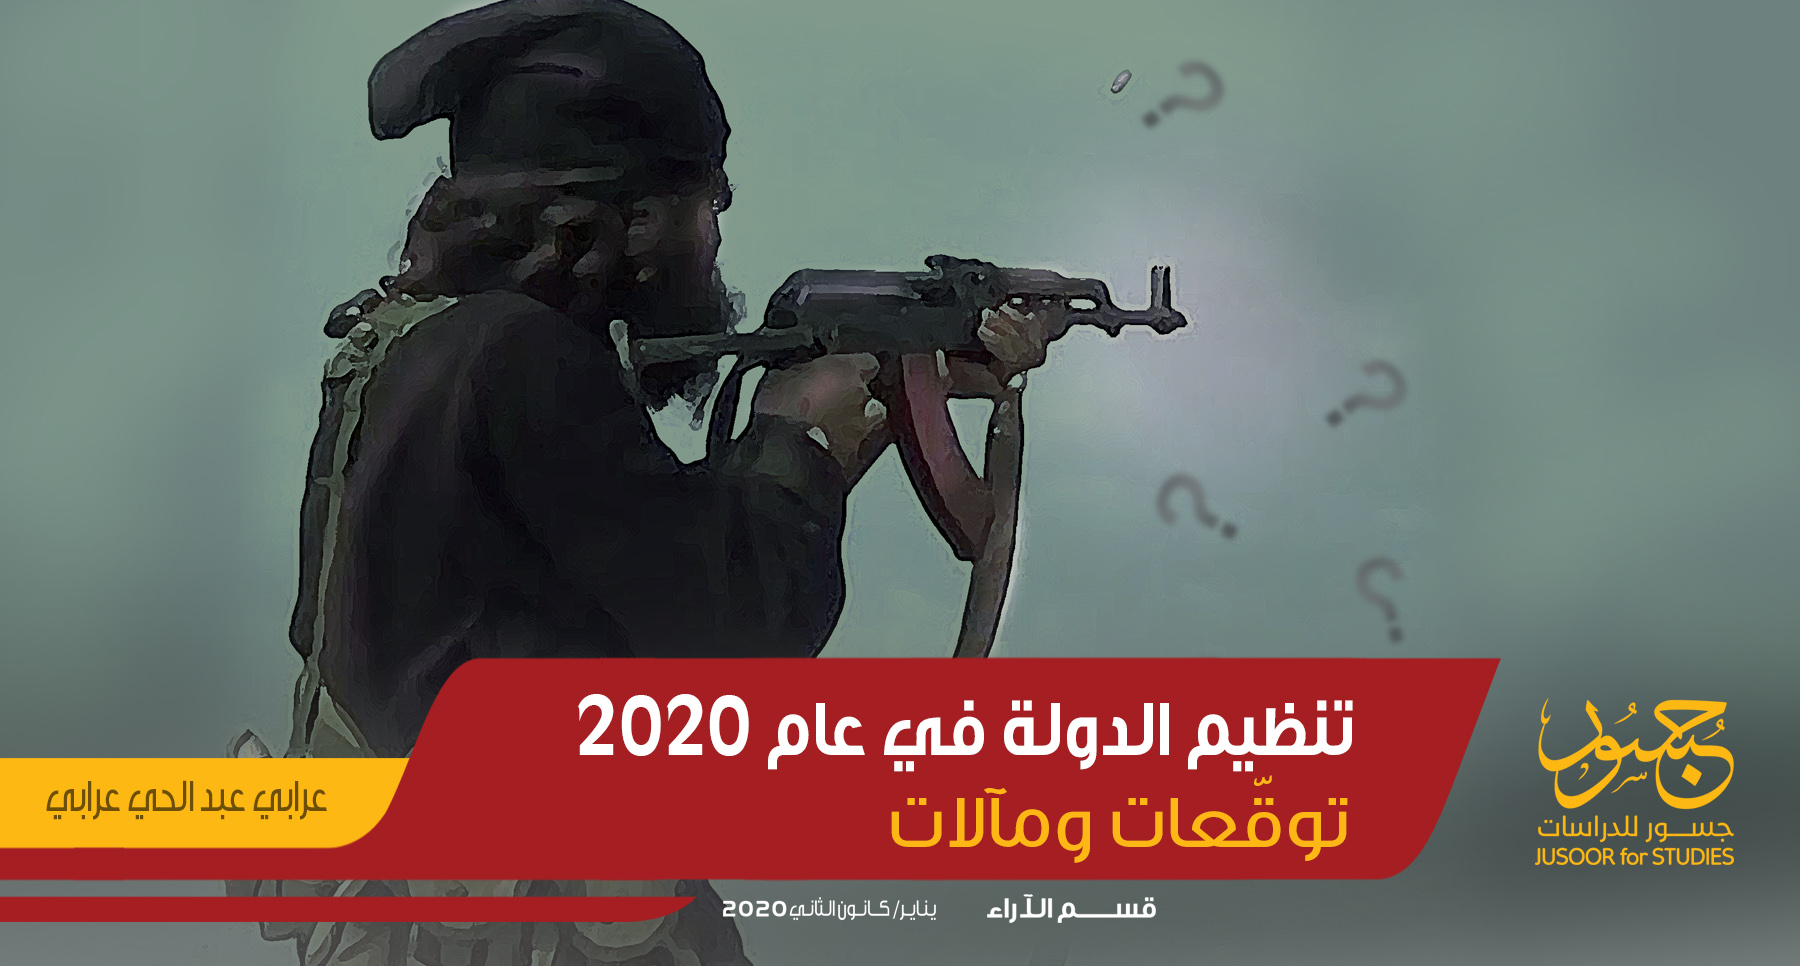 تنظيم الدولة في عام 2020 توقّعات ومآلات